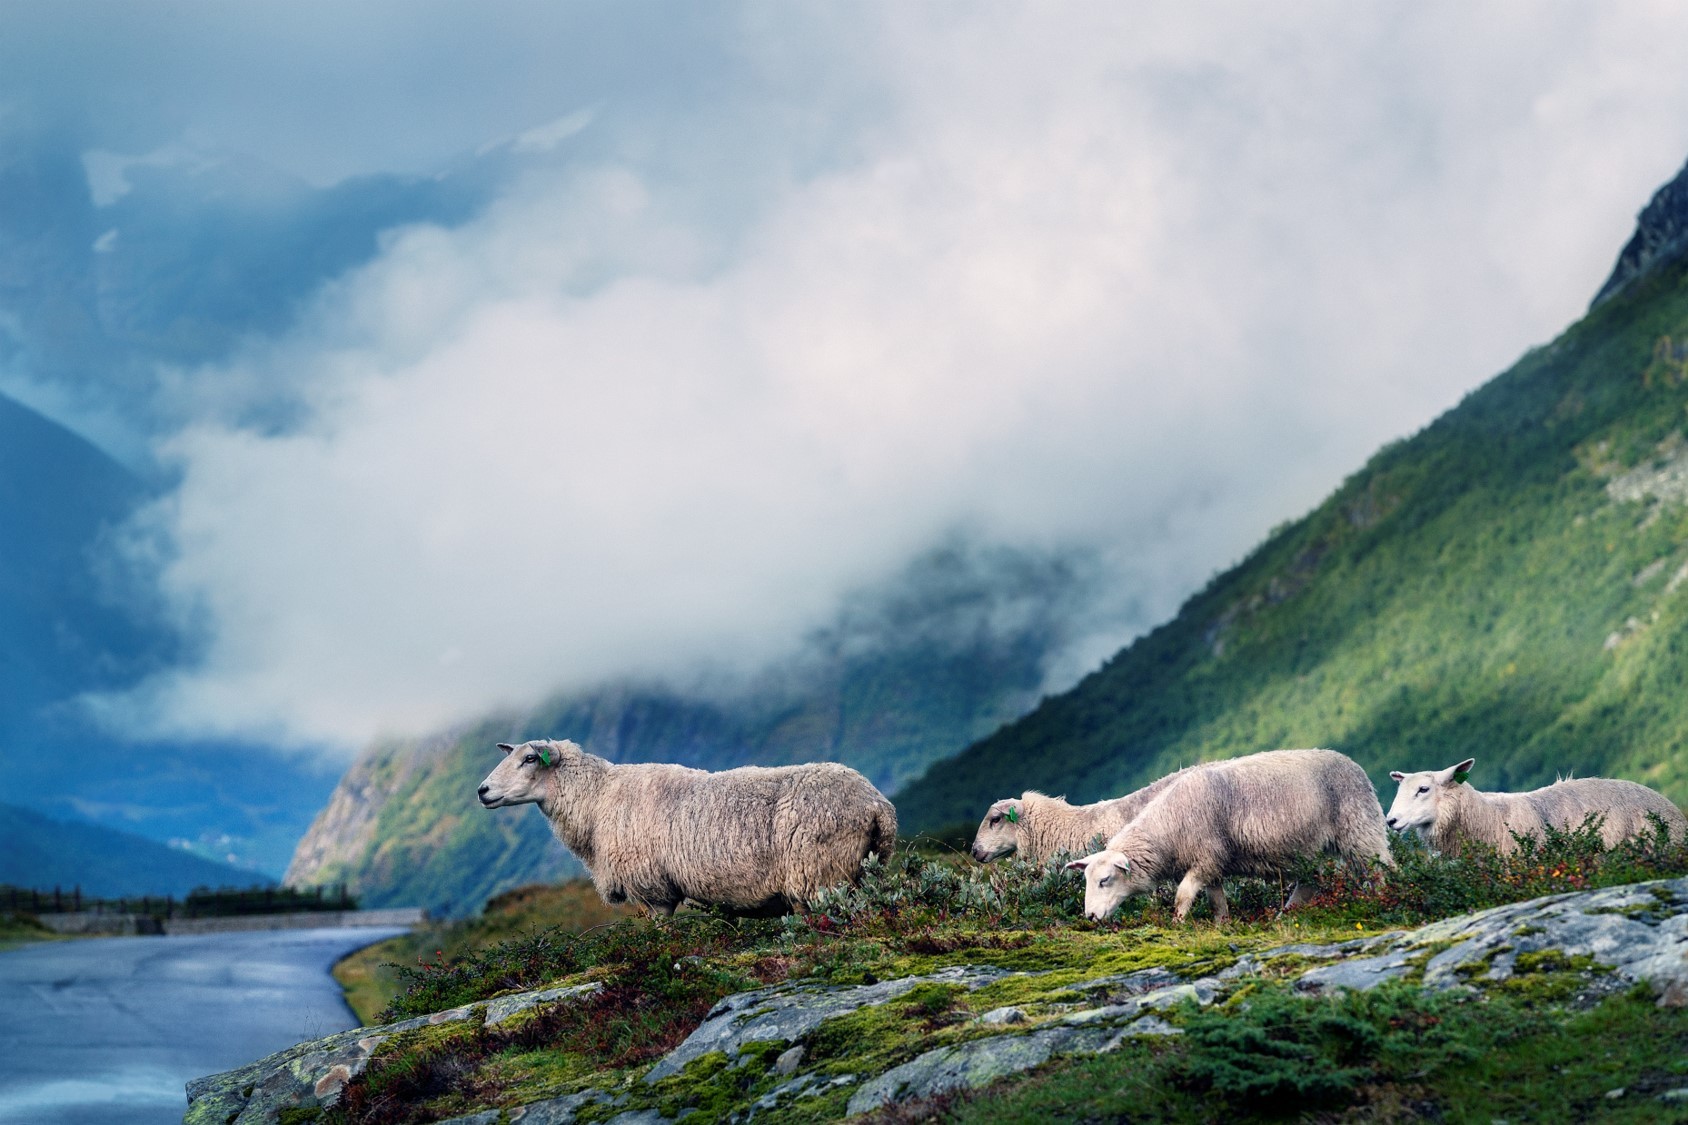 Sheep grazing in the mountain